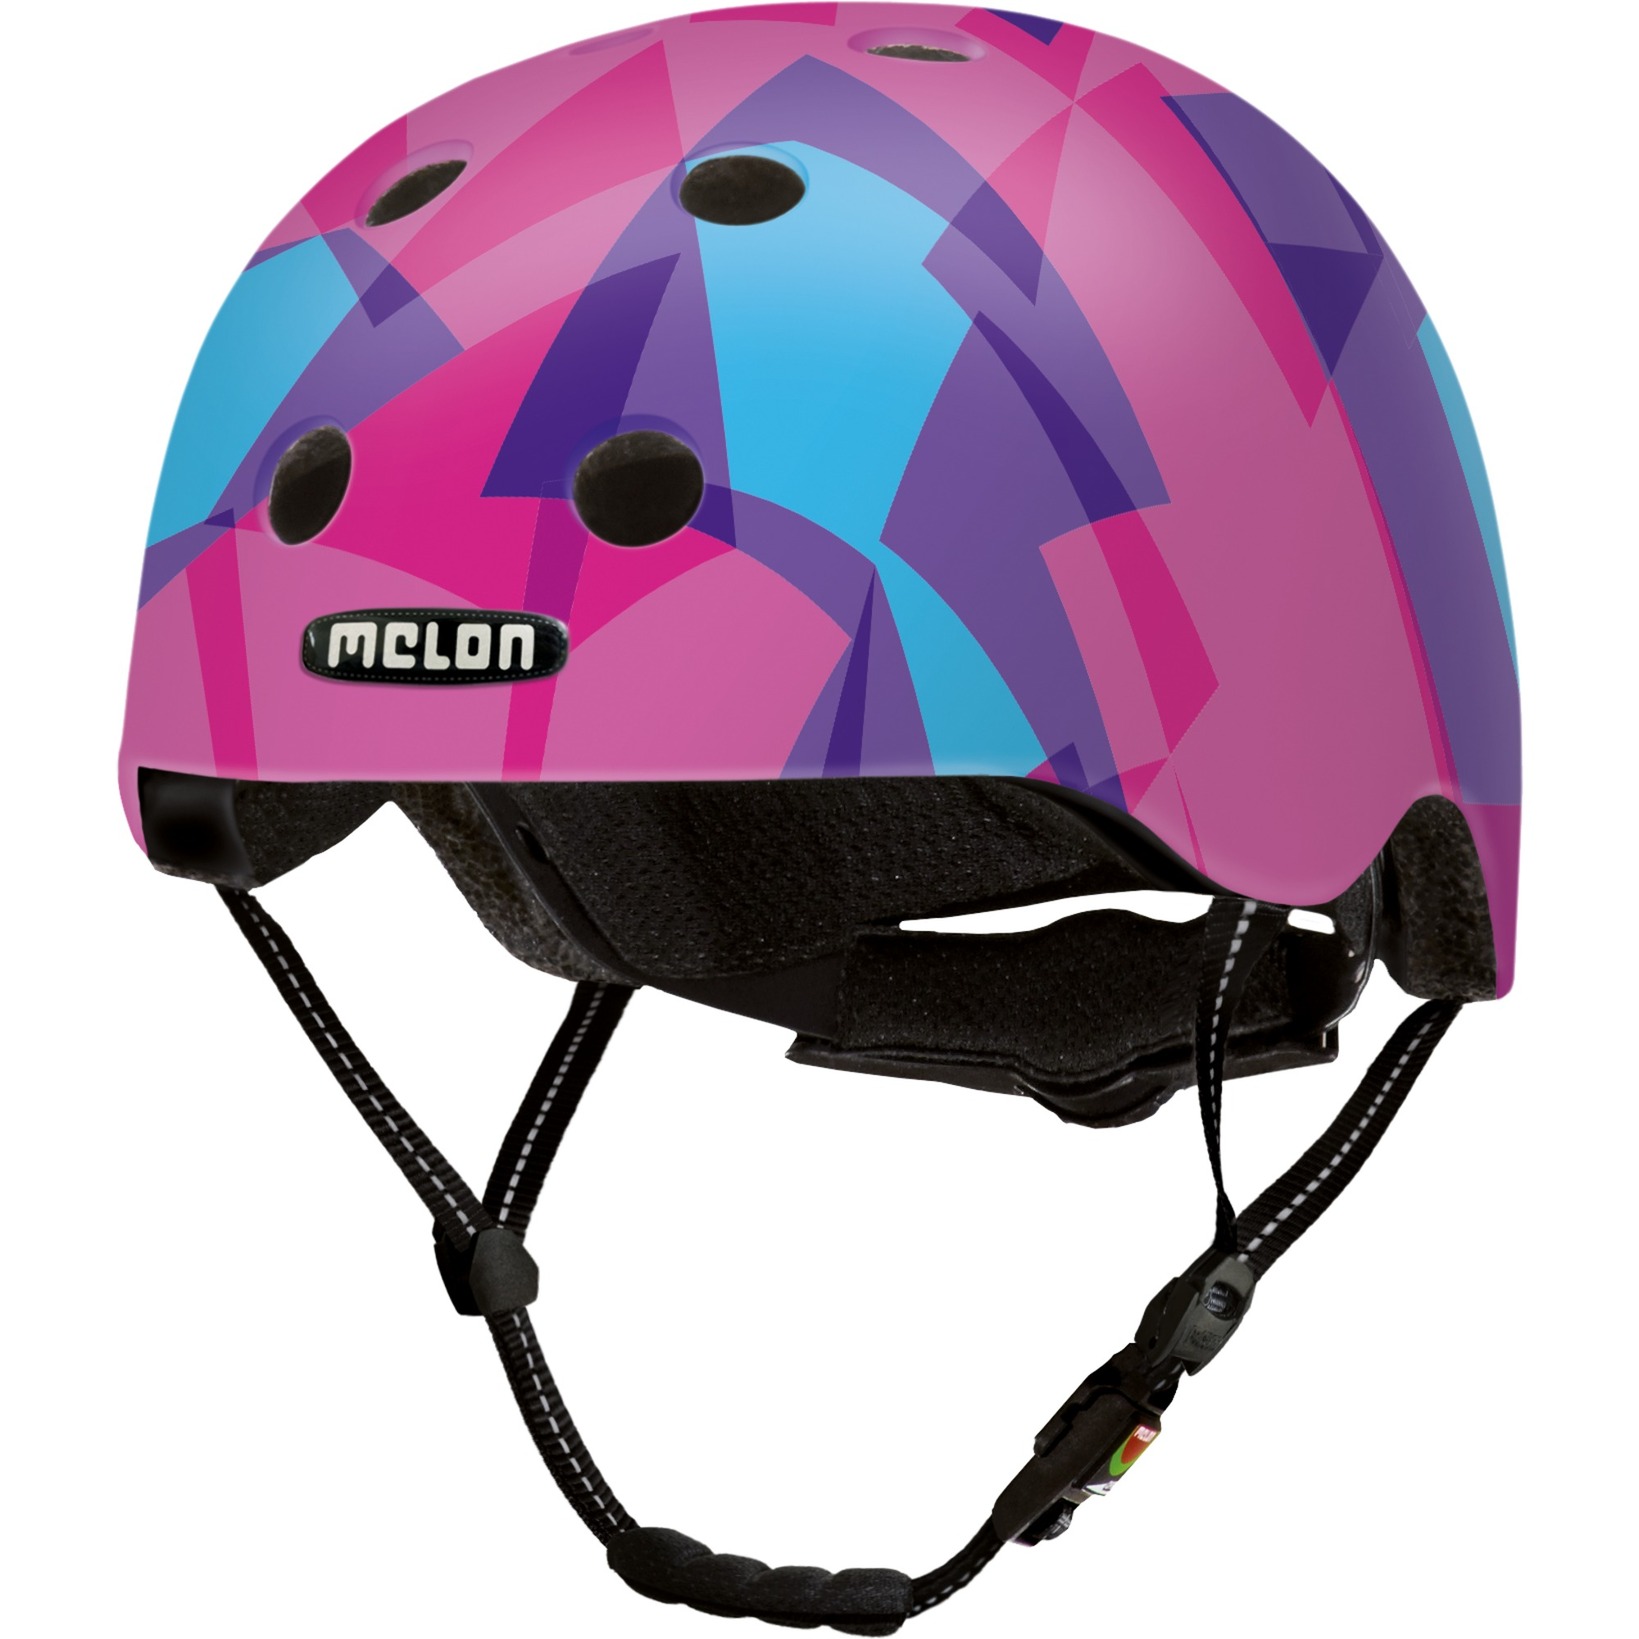 Image of Alternate - Candy, Helm online einkaufen bei Alternate